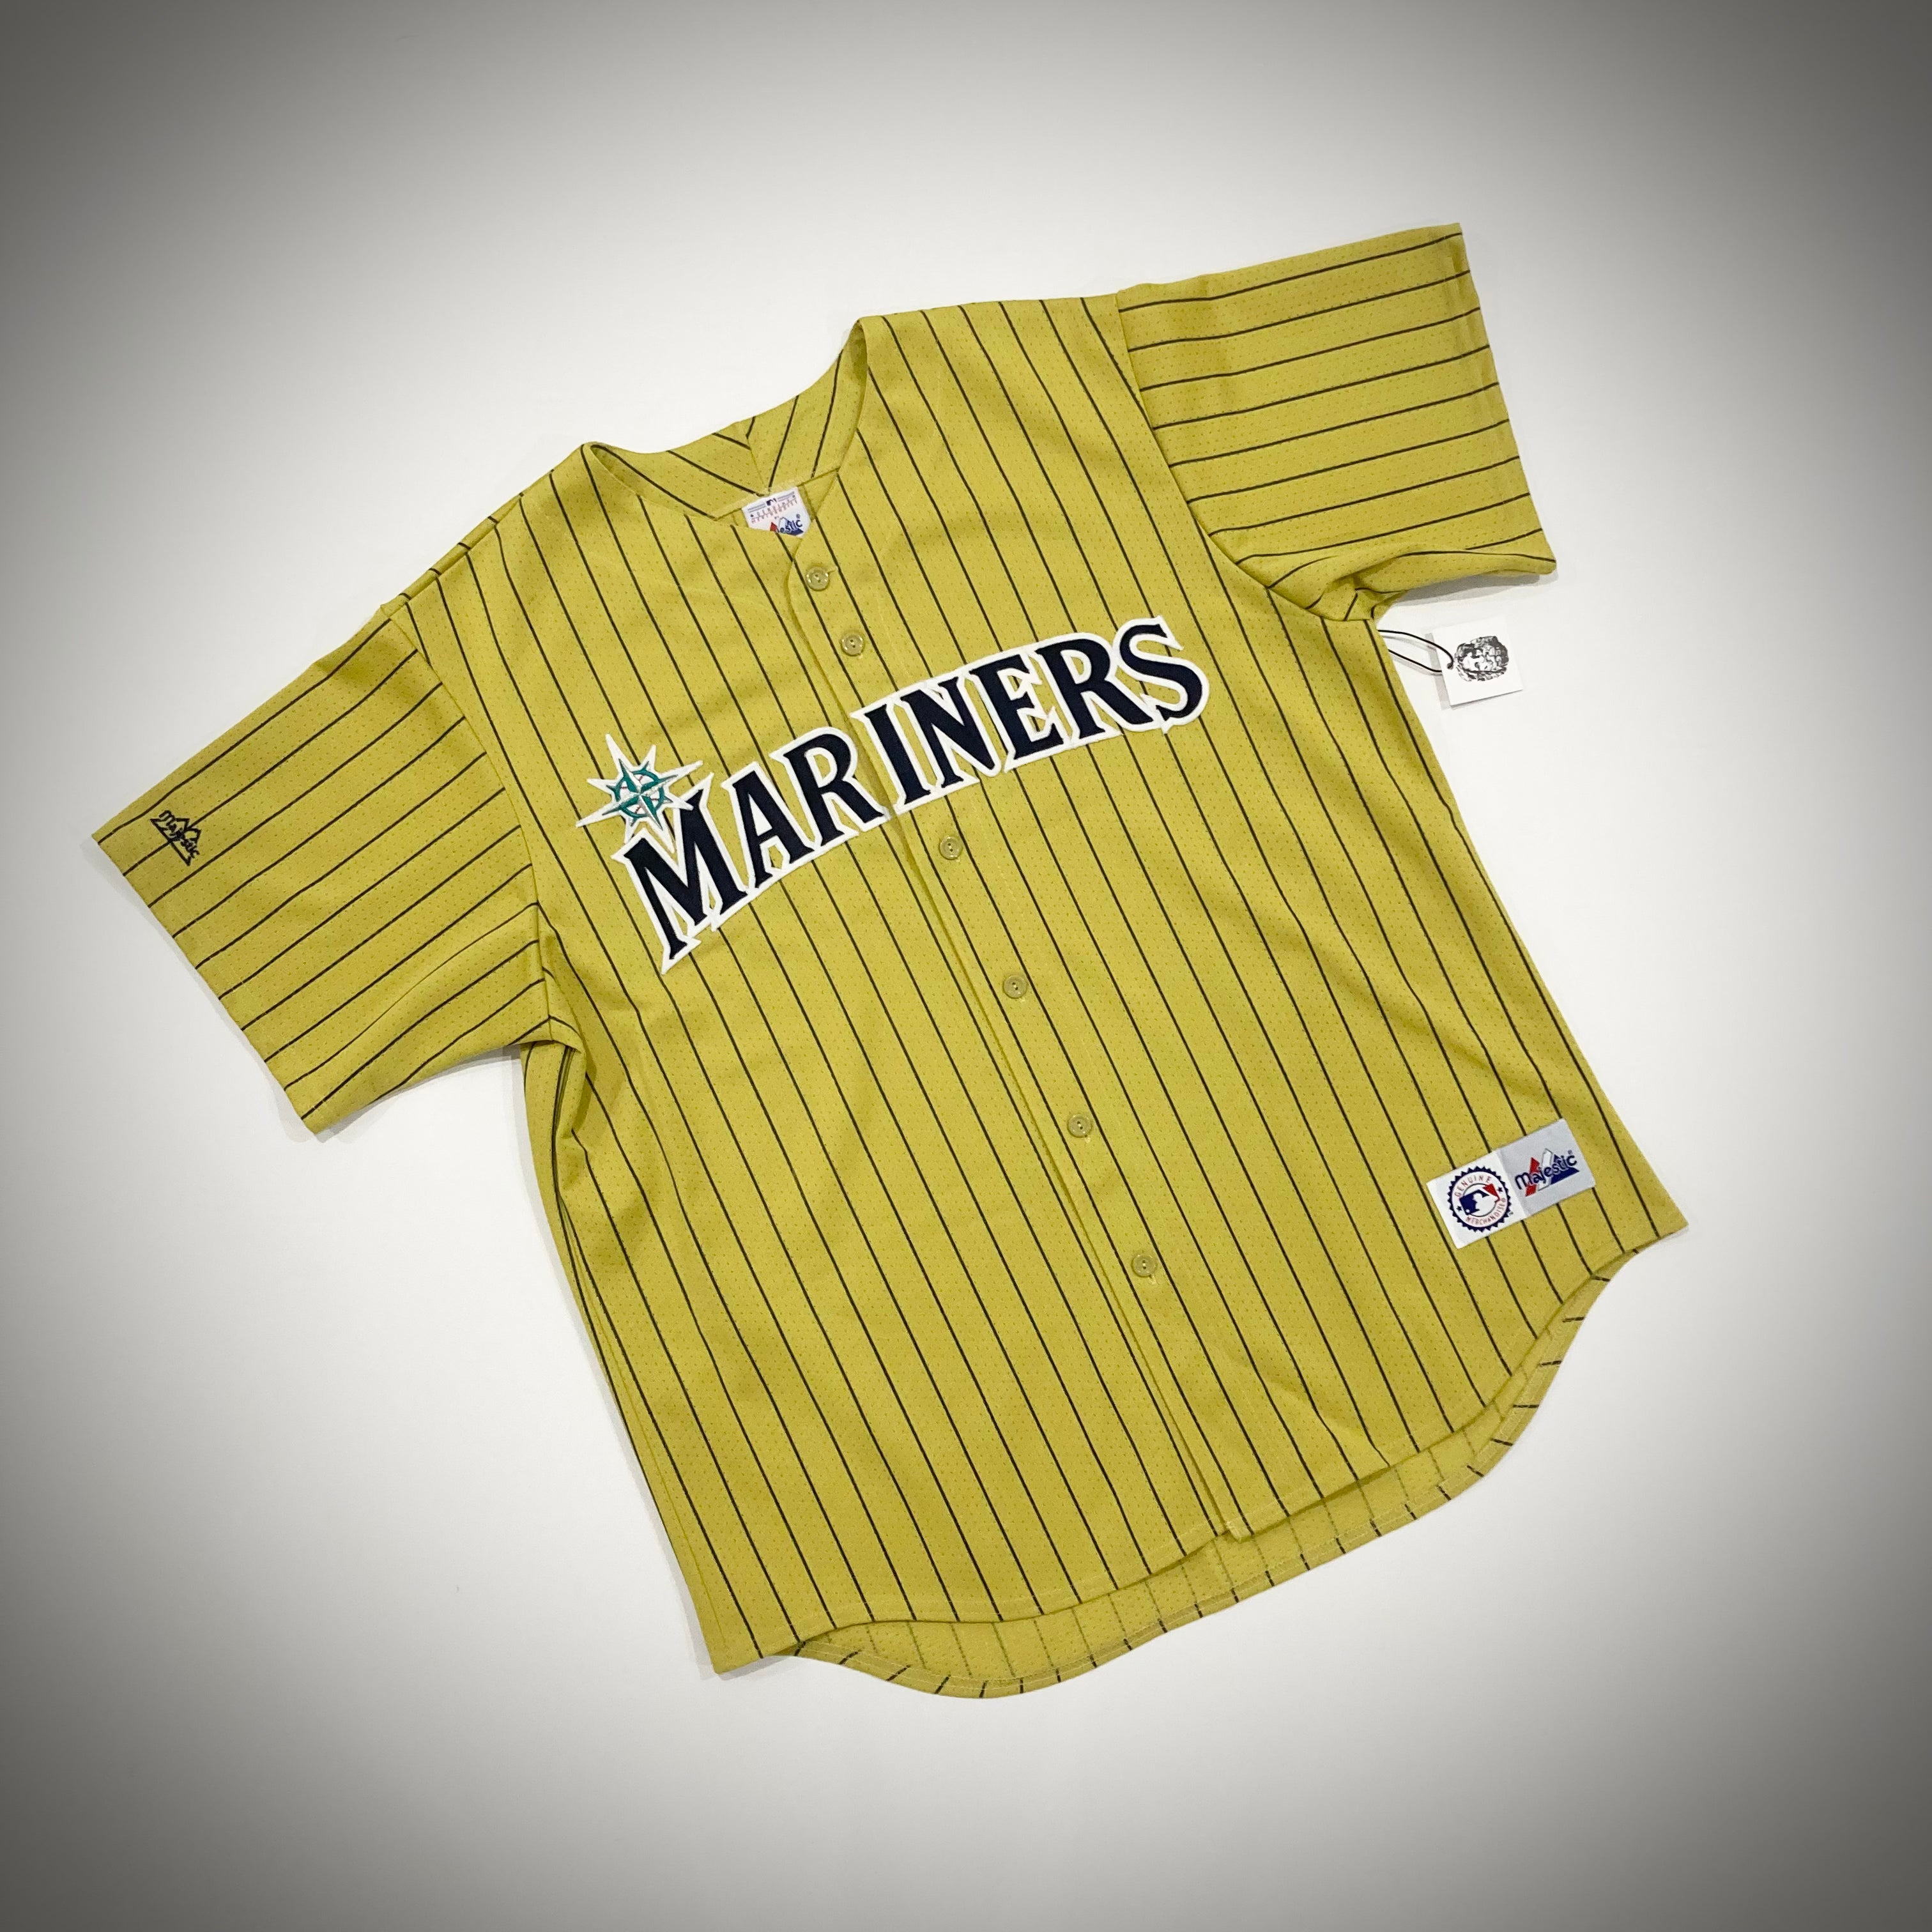 Majestic, Shirts, Seattle Mariners Jersey